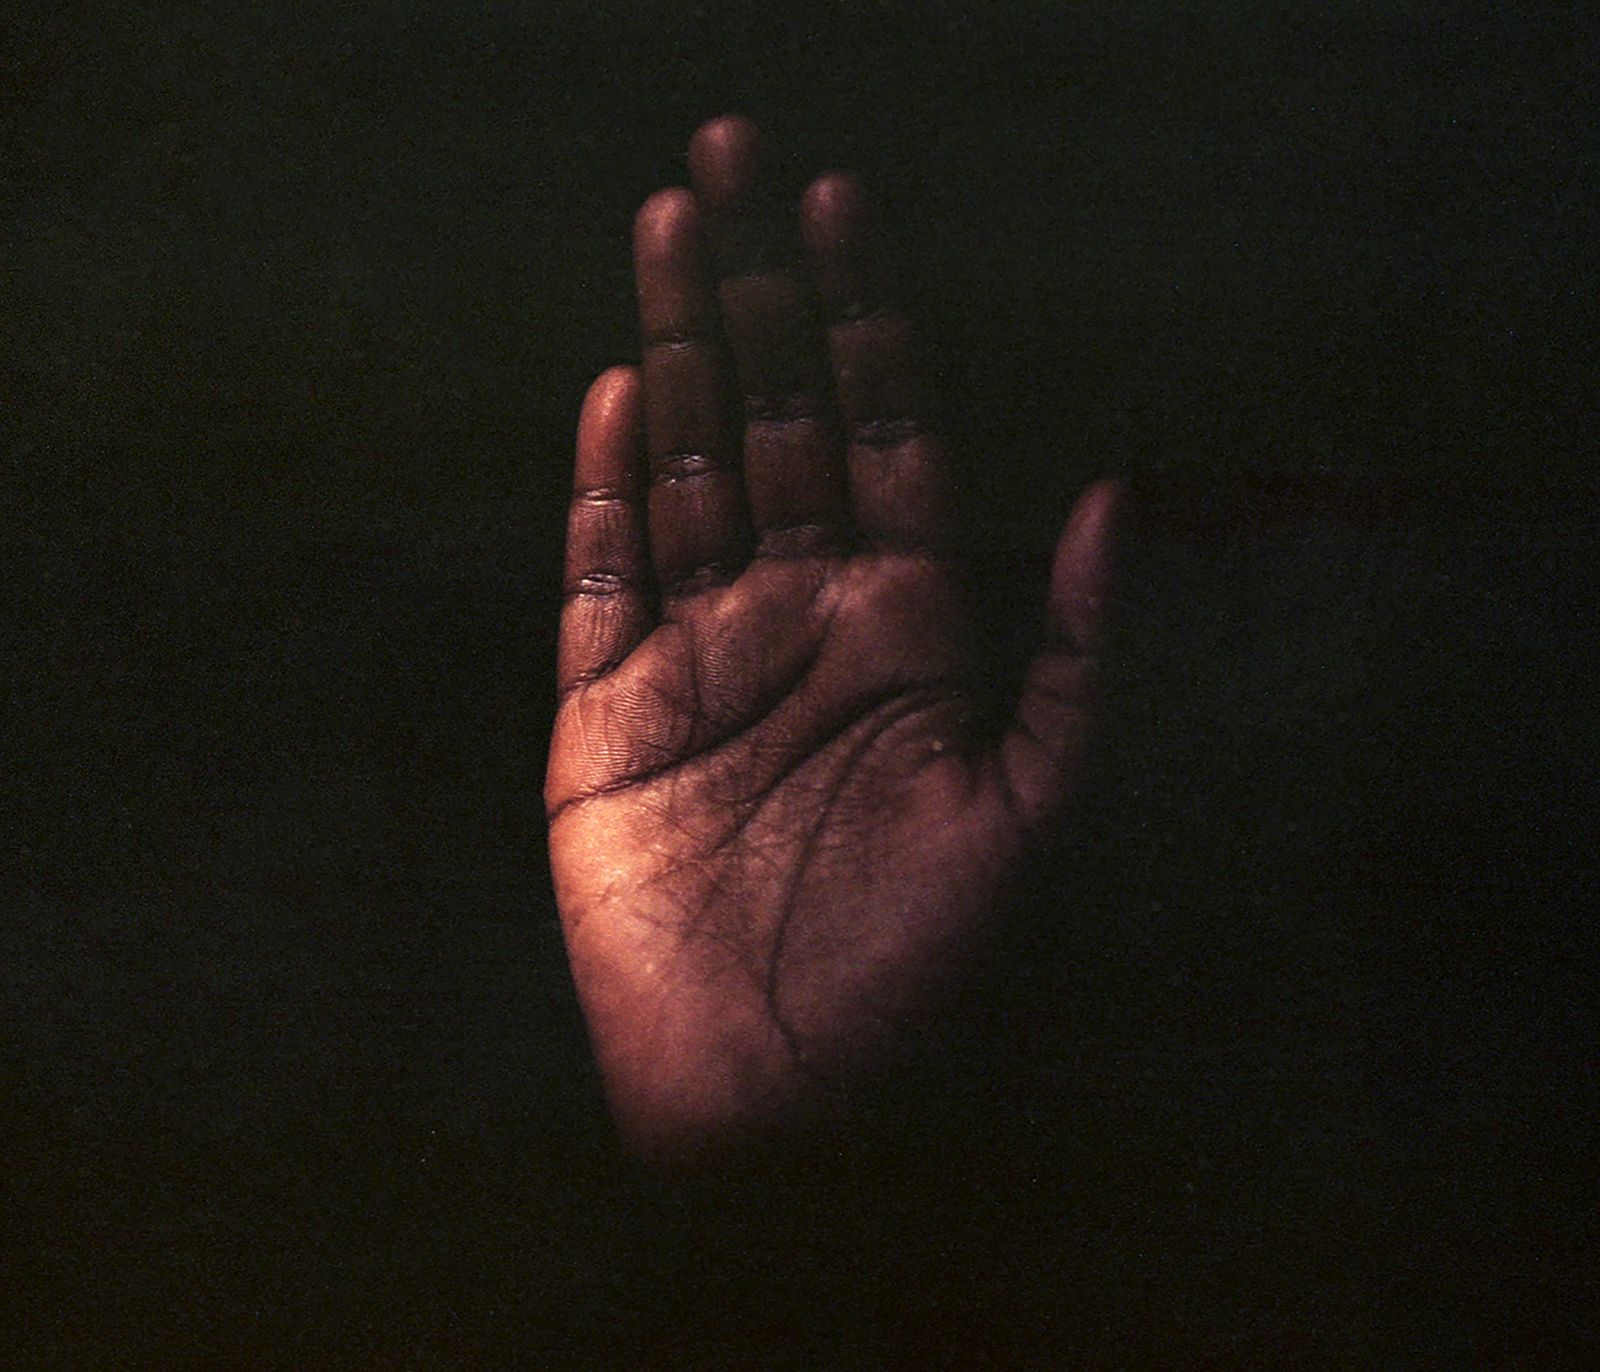 © Cécile Smetana - Mado's hand